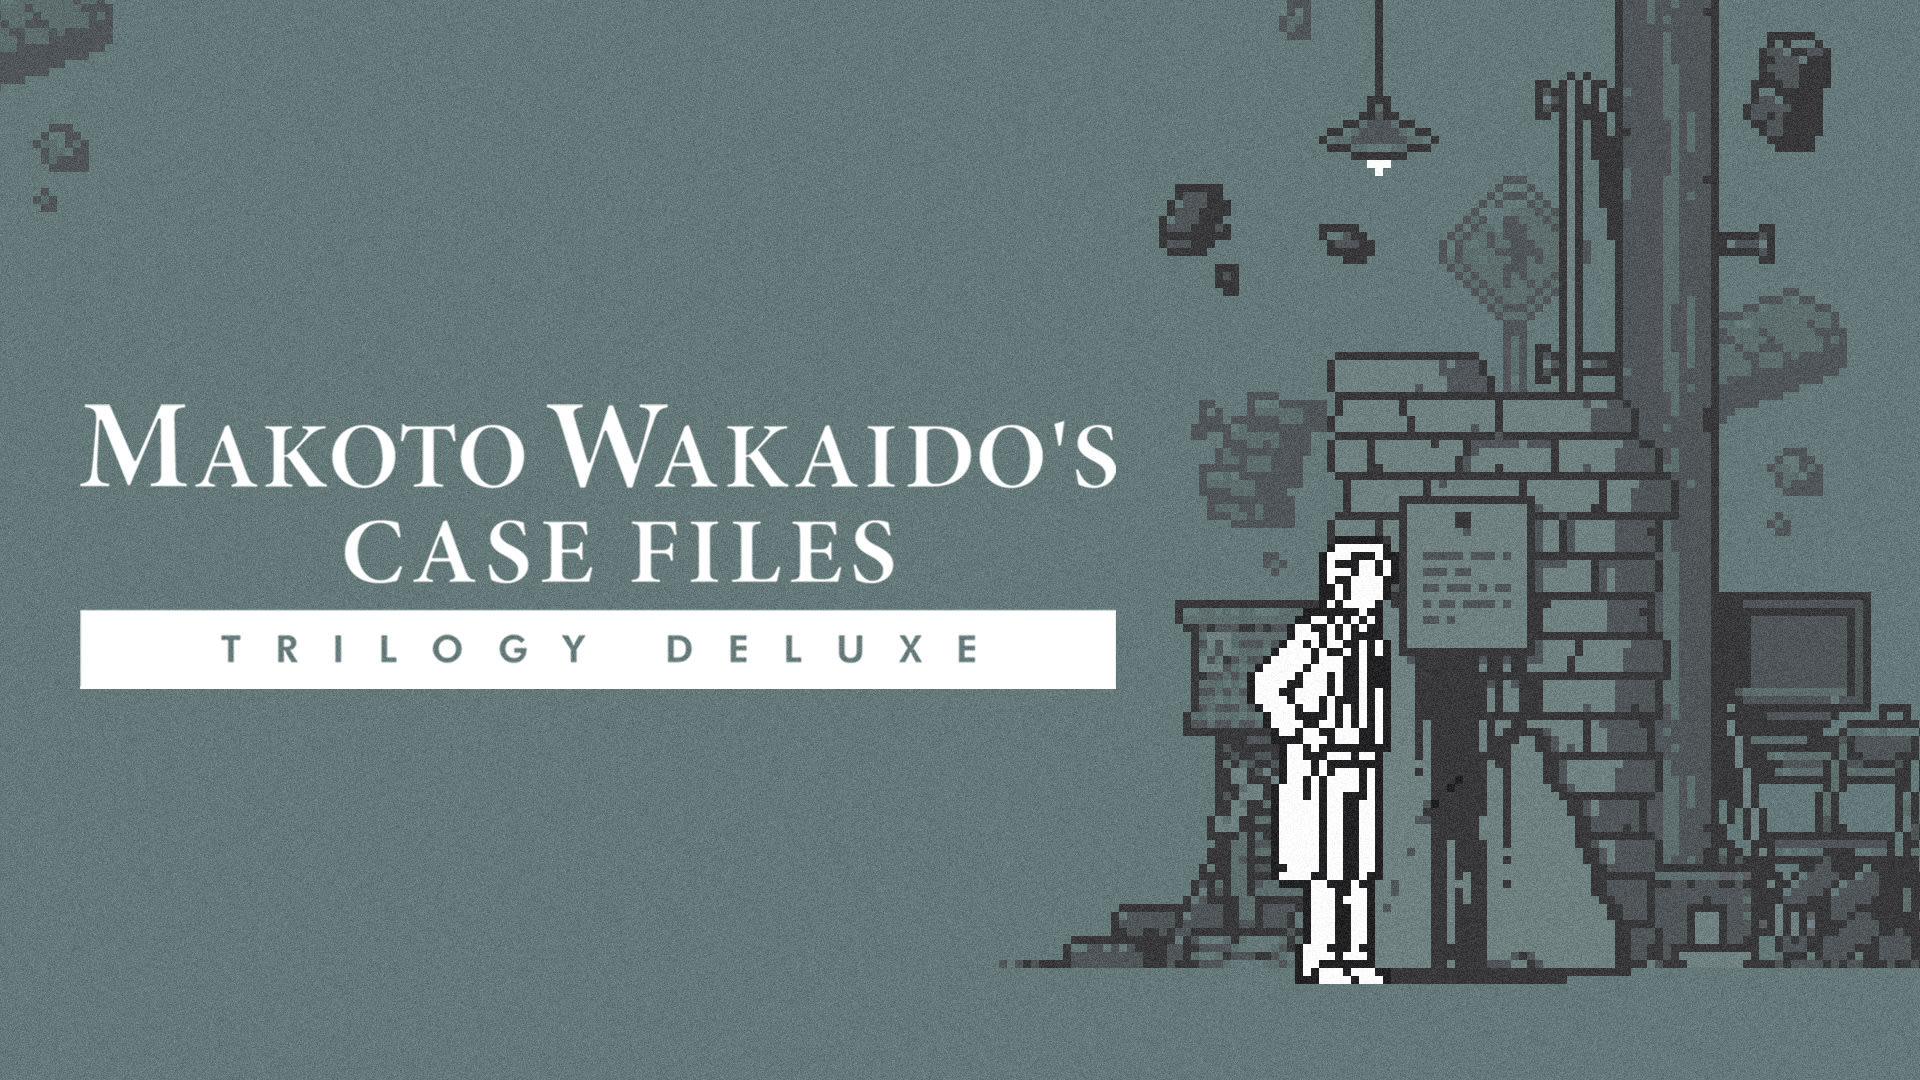 TRILOGÍA DELUXE de los archivos de casos de MAKOTO WAKAIDO 1